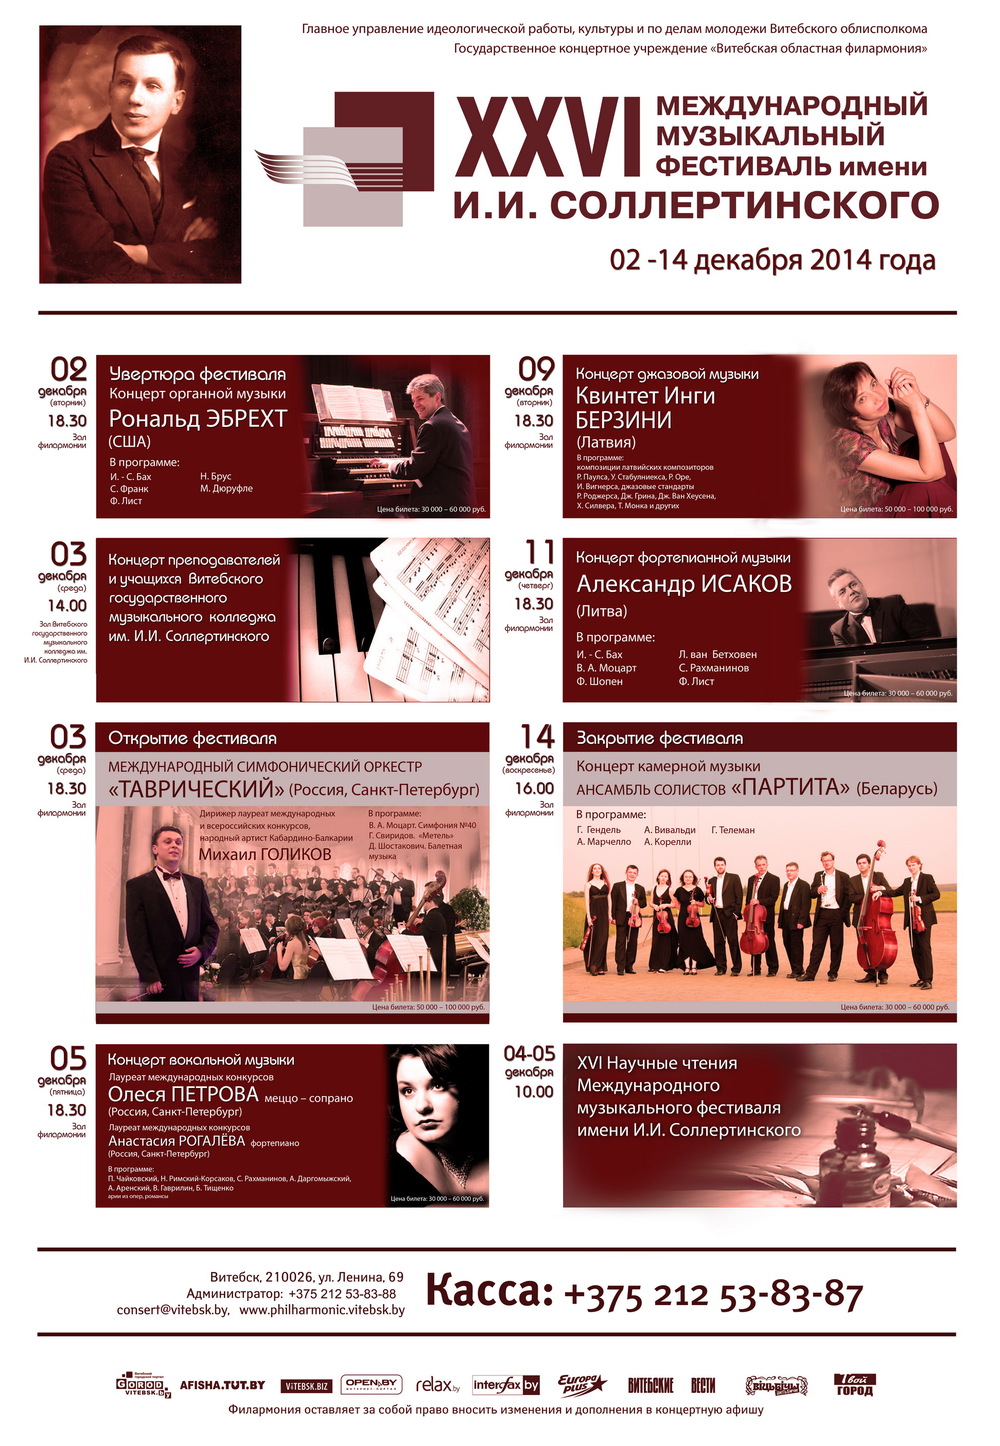 Программа XXVI Международного музыкального фестиваля им. И.И. Соллертинского